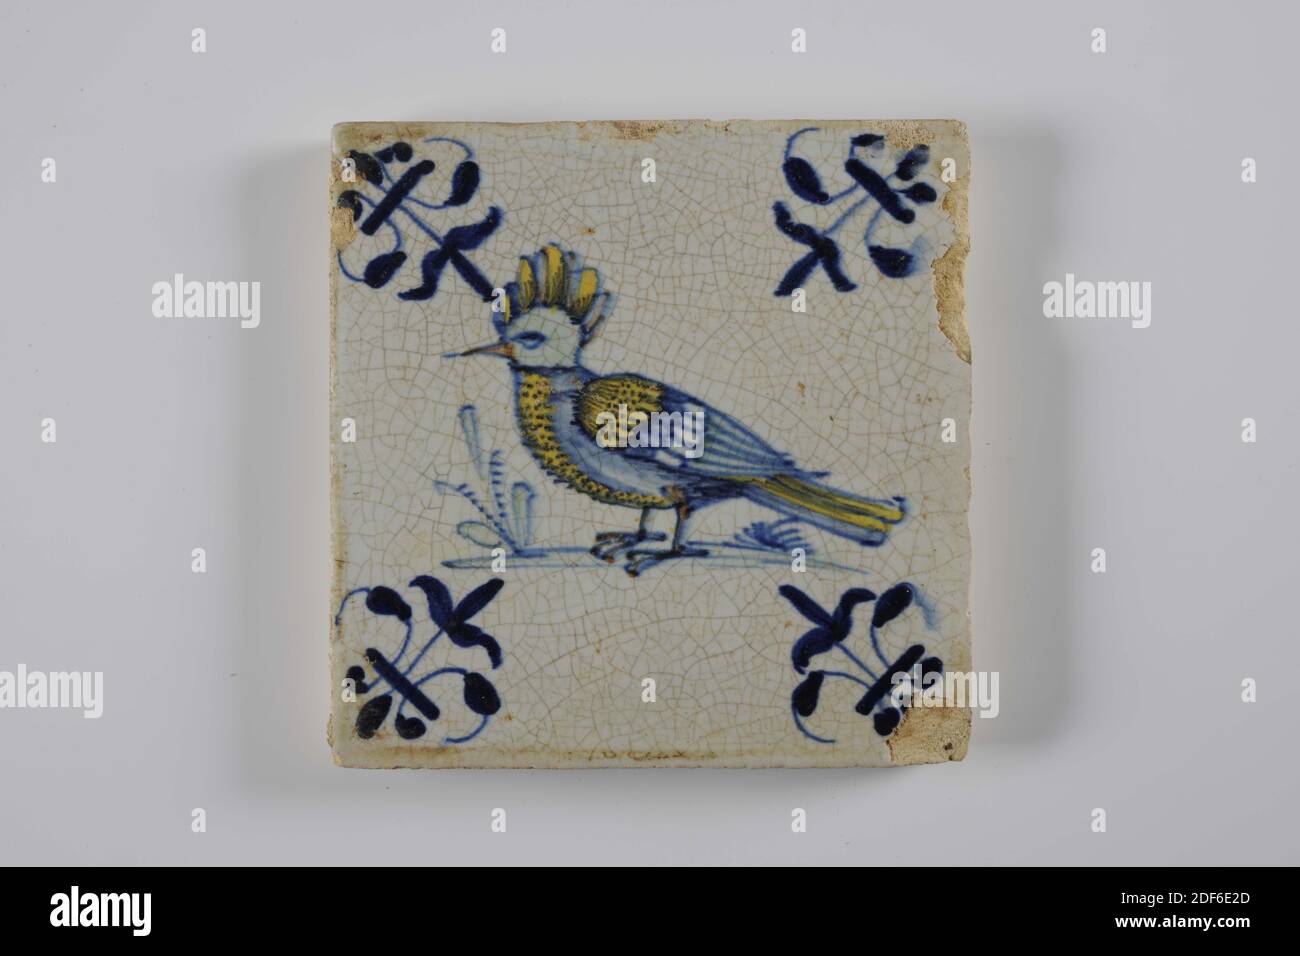 Carreau de mur, Anonyme, entre 1620-1650, glaçure d'étain, faïence, général: 13 x 13 x 1,2cm (130 x 130 x 12mm), oiseau, gouda, carreau de mur de faïence recouvert de glaçure d'étain. La tuile est peinte multicolore en vert, bleu et jaune. La tuile représente un oiseau orienté vers la gauche avec une crête sur un sol. La tuile a un lis comme un motif de coin, 1995 Banque D'Images